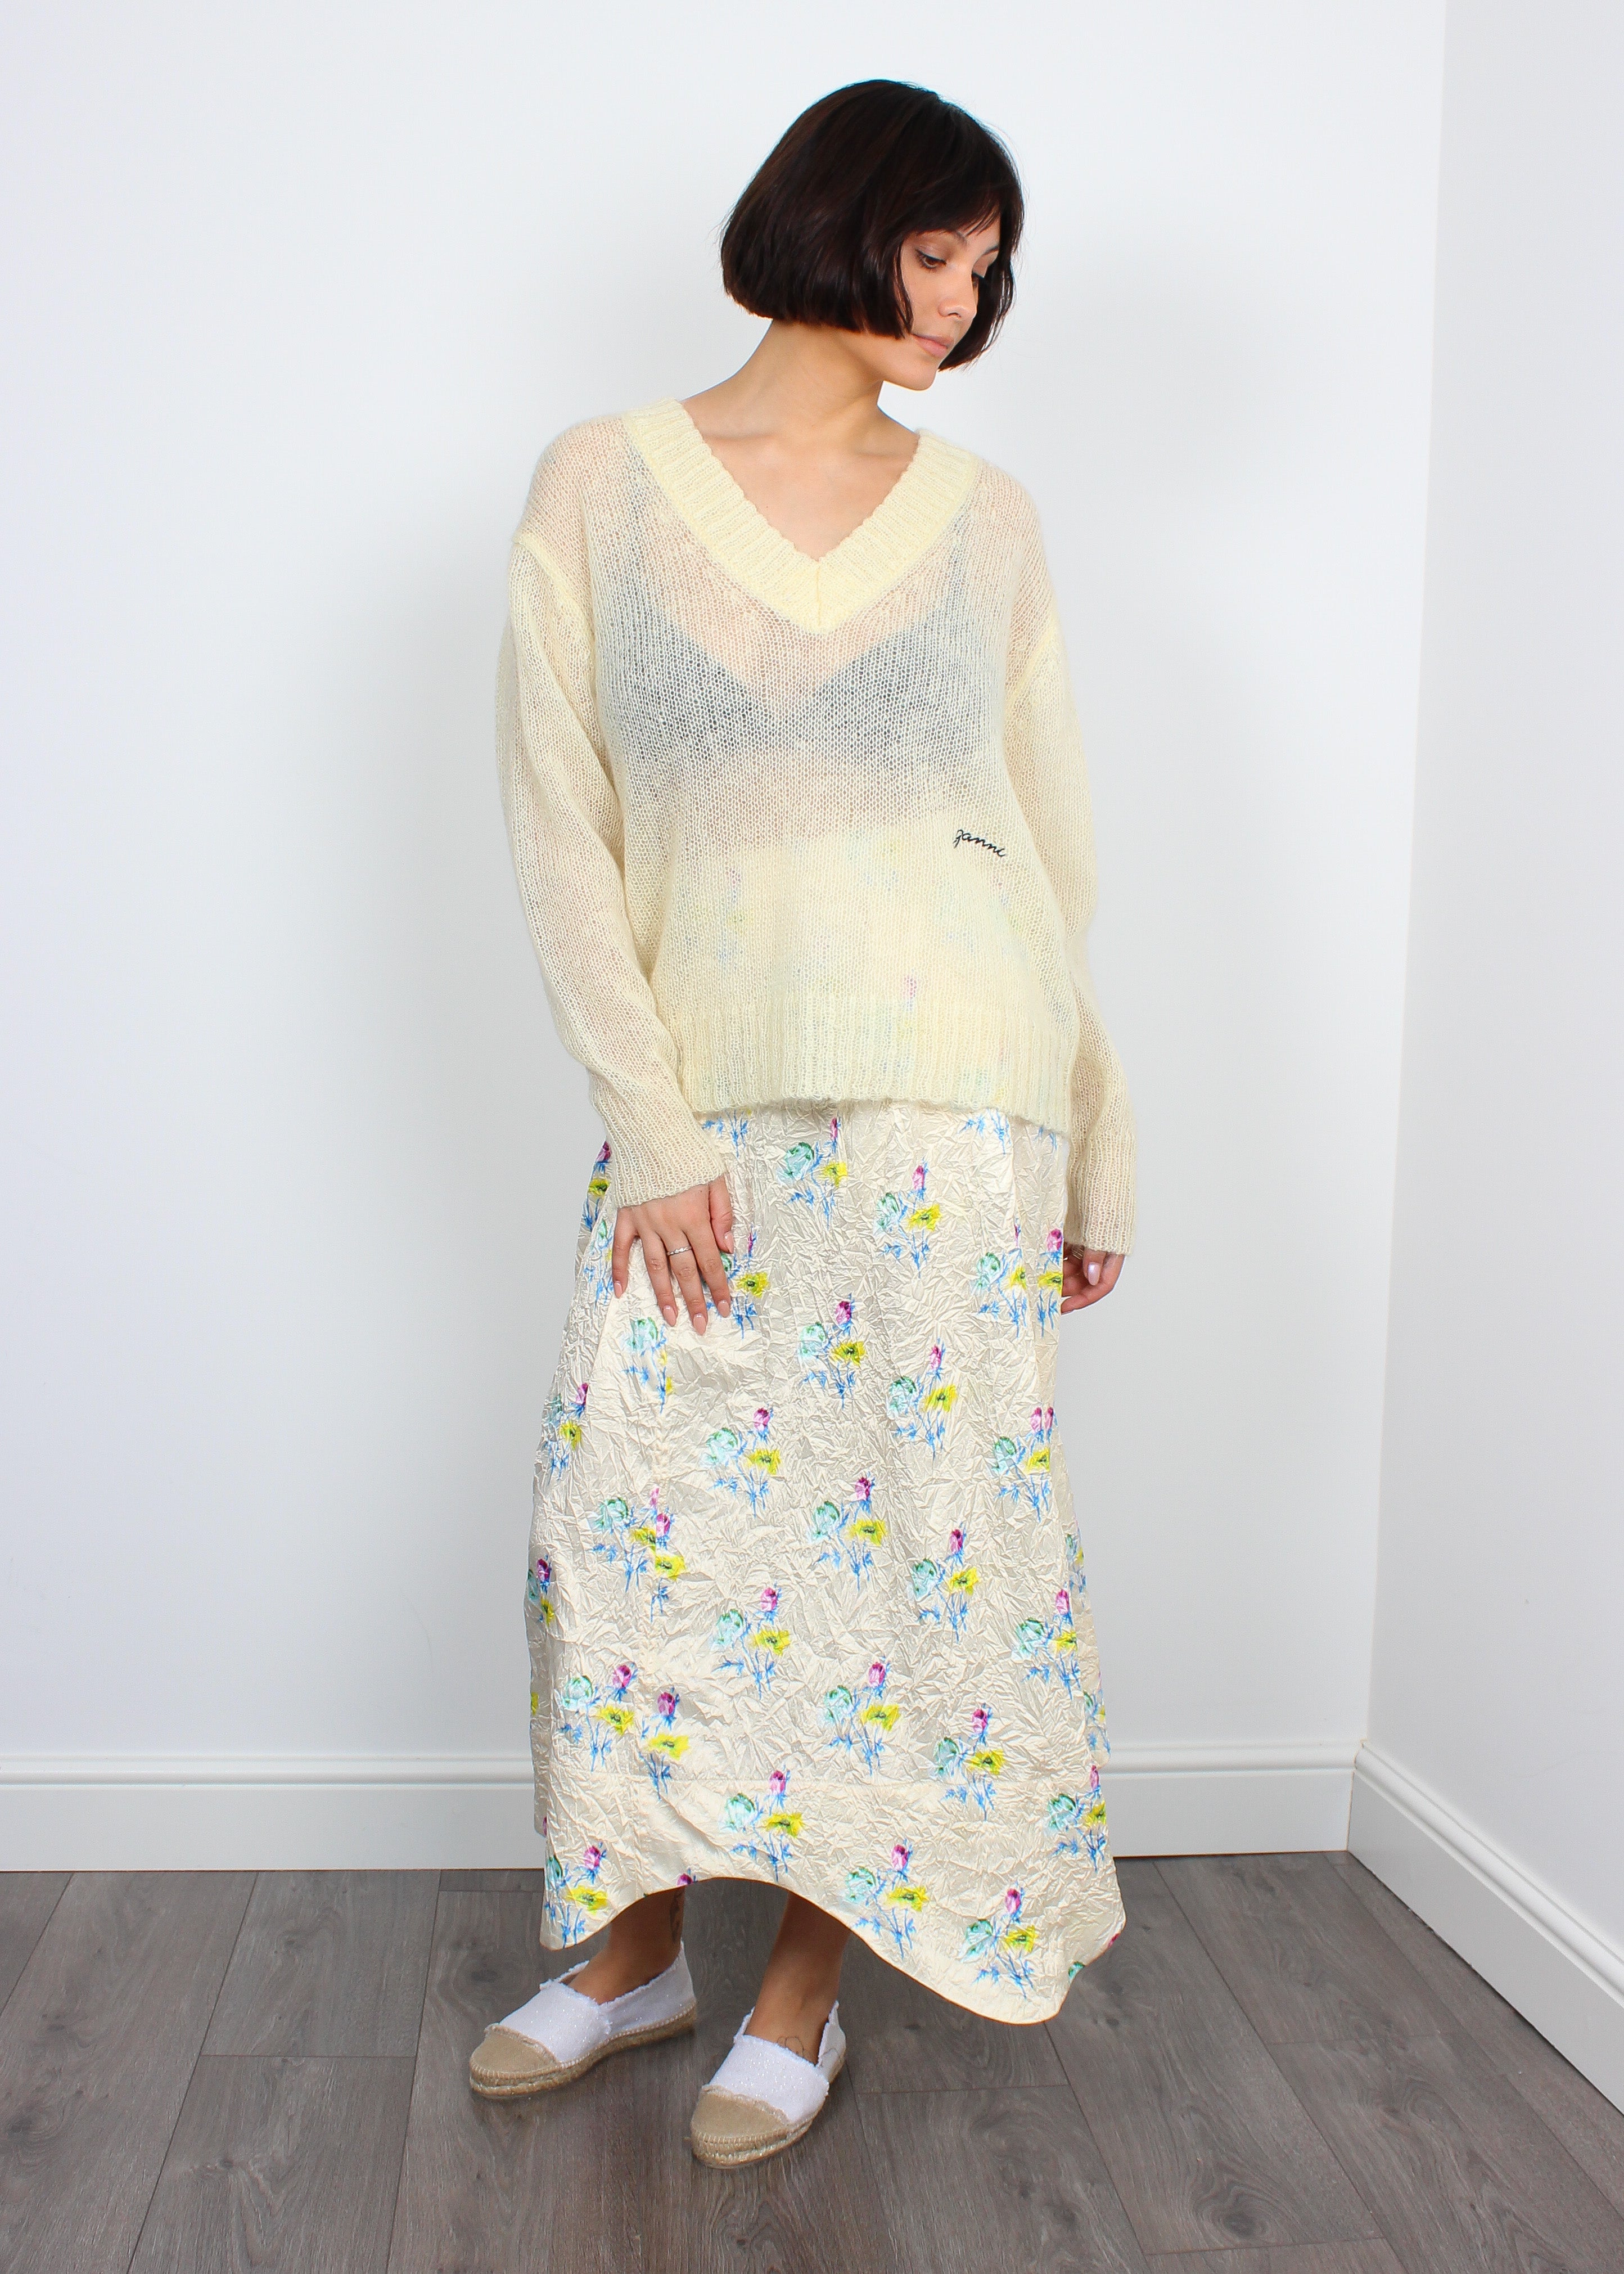 Ganni F7037 Crinkled Skirt in Floral Rutabaga